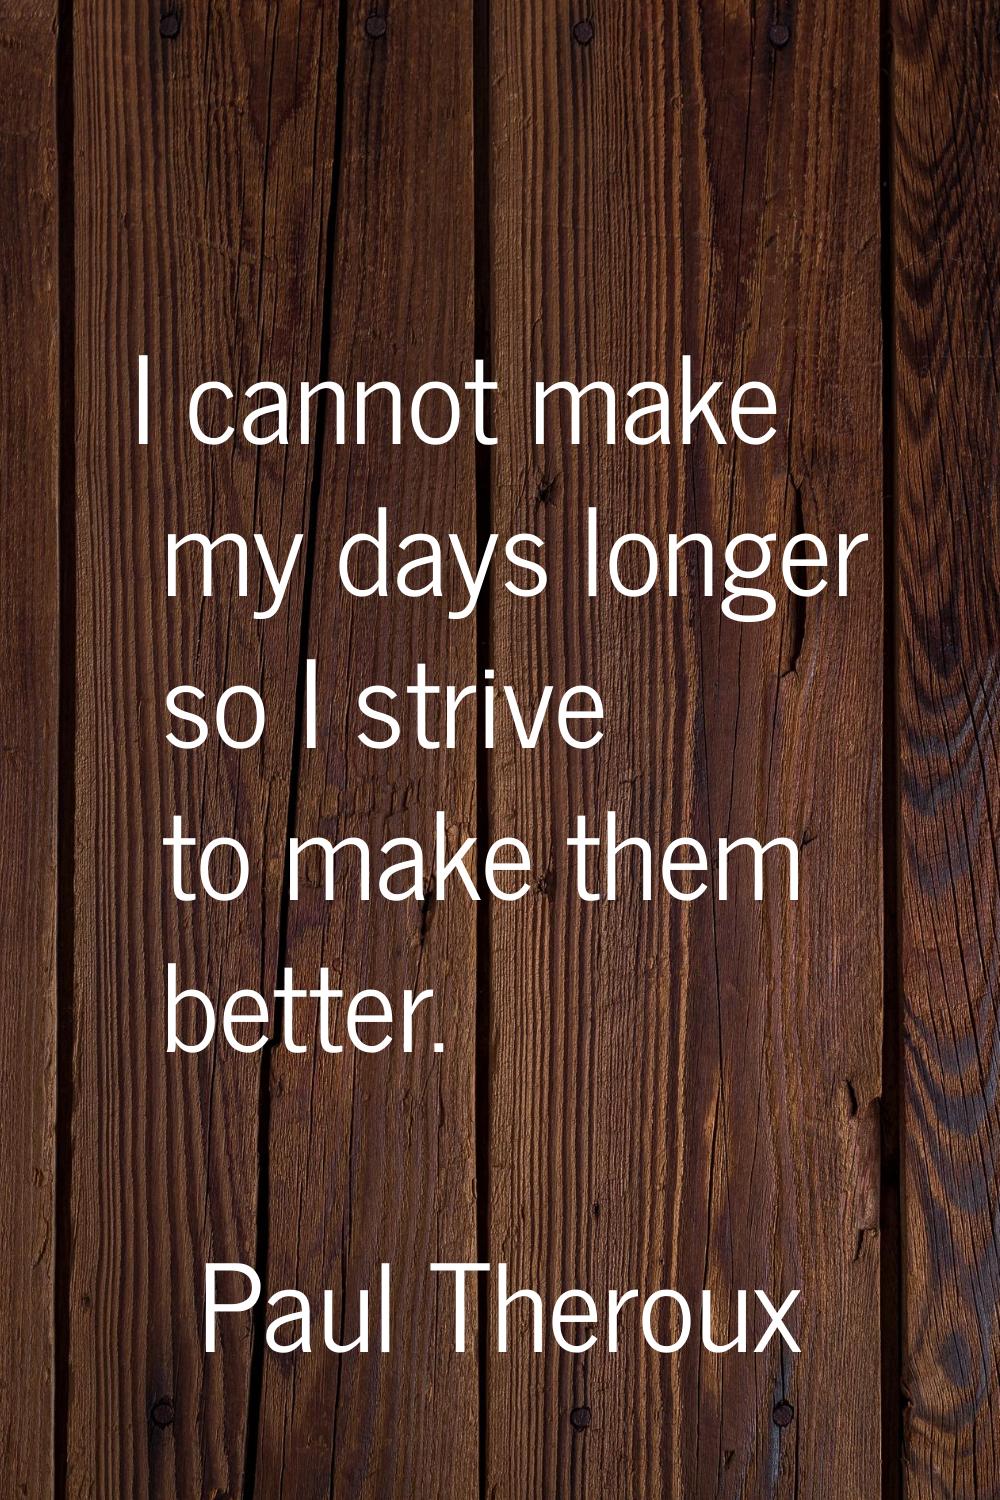 I cannot make my days longer so I strive to make them better.